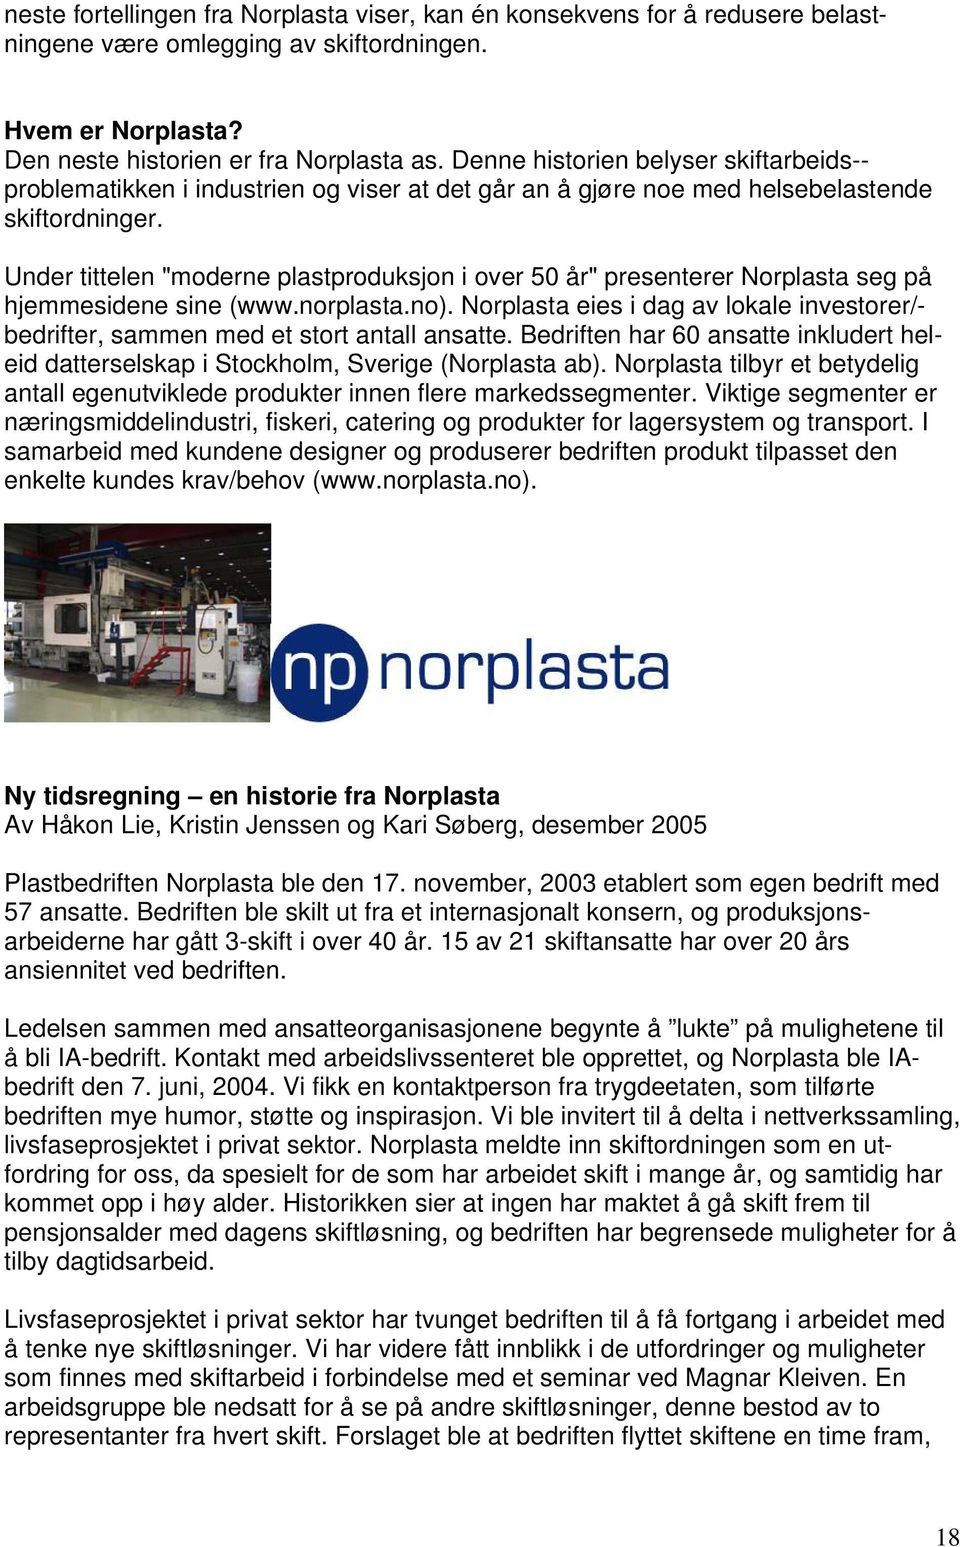 Under tittelen "moderne plastproduksjon i over 50 år" presenterer Norplasta seg på hjemmesidene sine (www.norplasta.no).